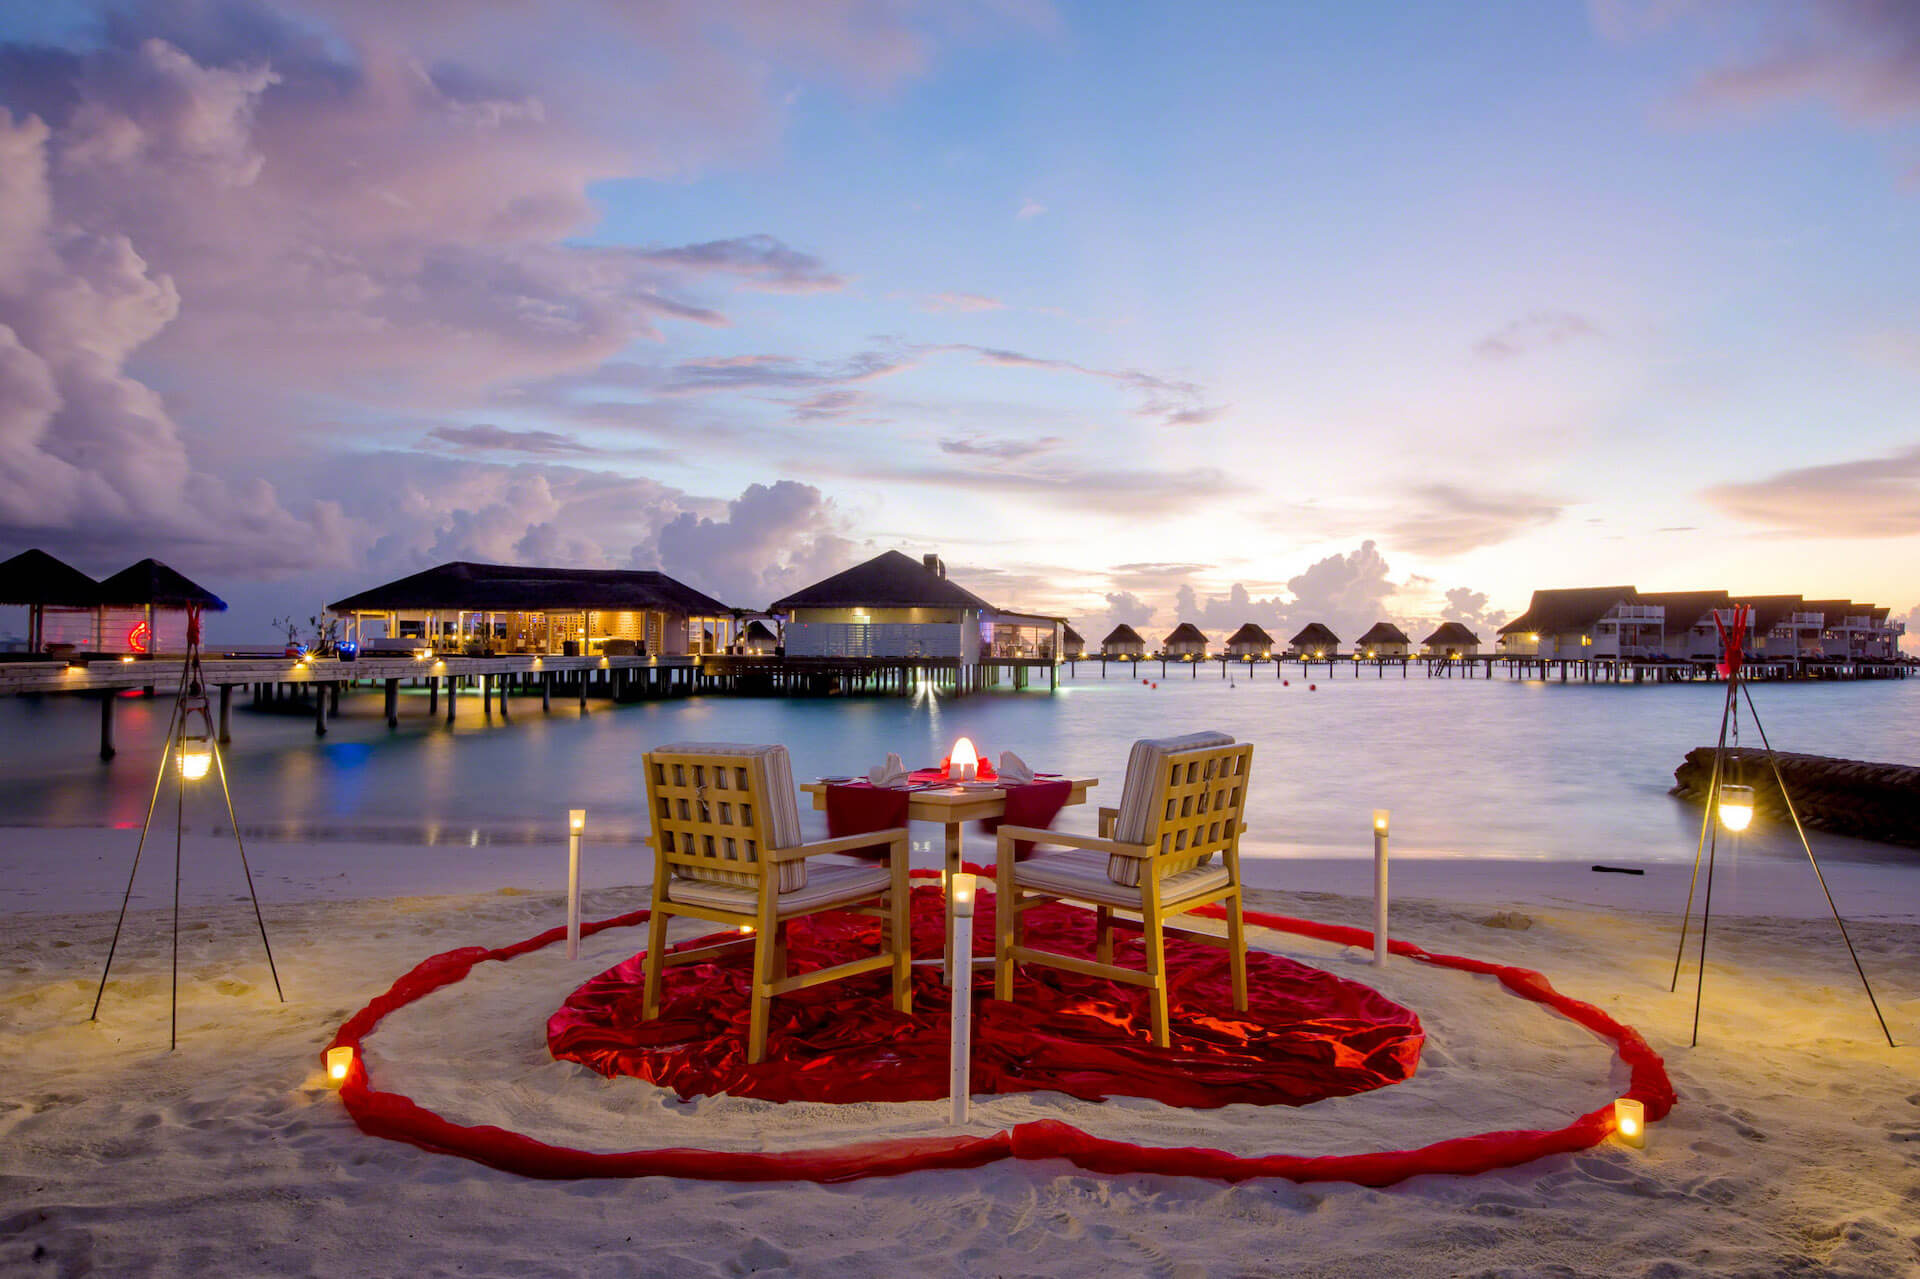 Centara grand island resort. Grand Centara Мальдивы Мальдивы отель. Centara Grand Island Resort & Spa. Centara Grand Island Resort & Spa 5*. Мальдивы Резорт романтика.